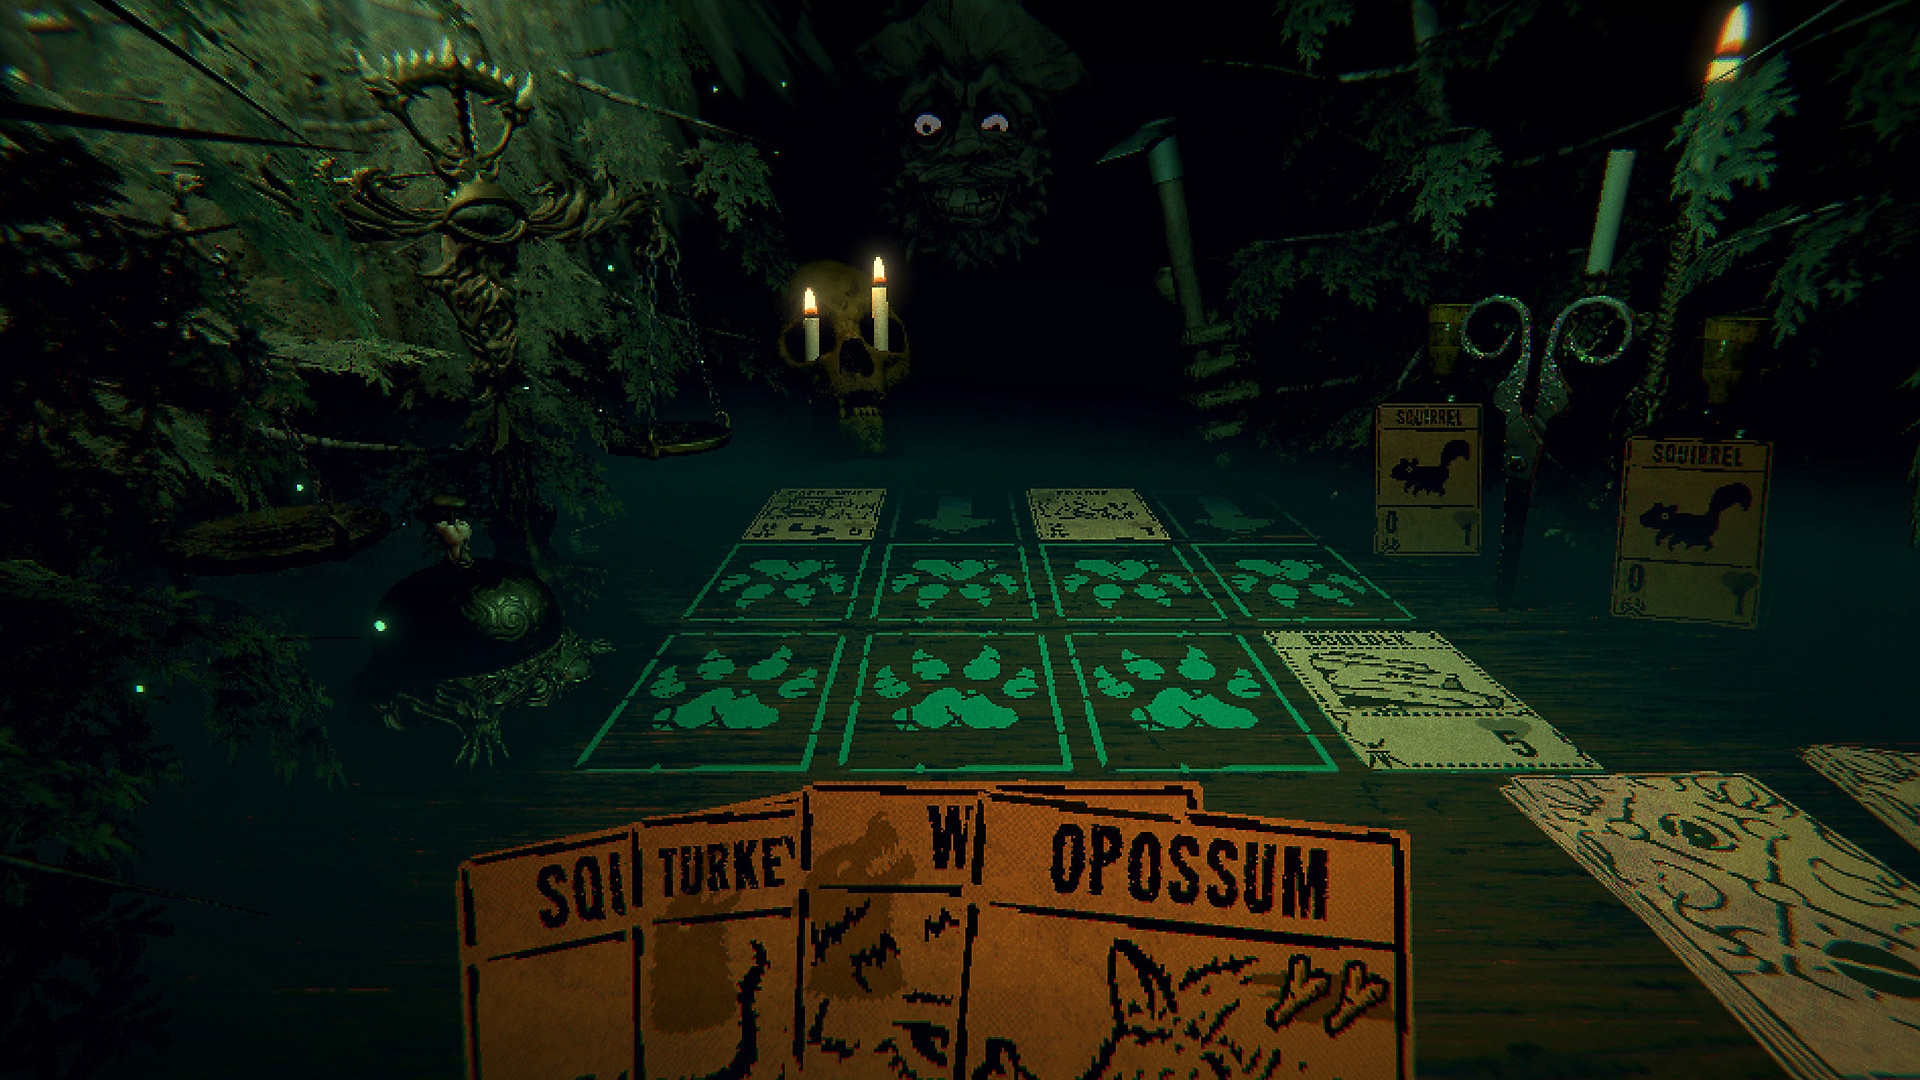 Istantanea della schermata di gioco di Inscryption che mostra una mano di carte in primo piano e una figura oscura più distante.